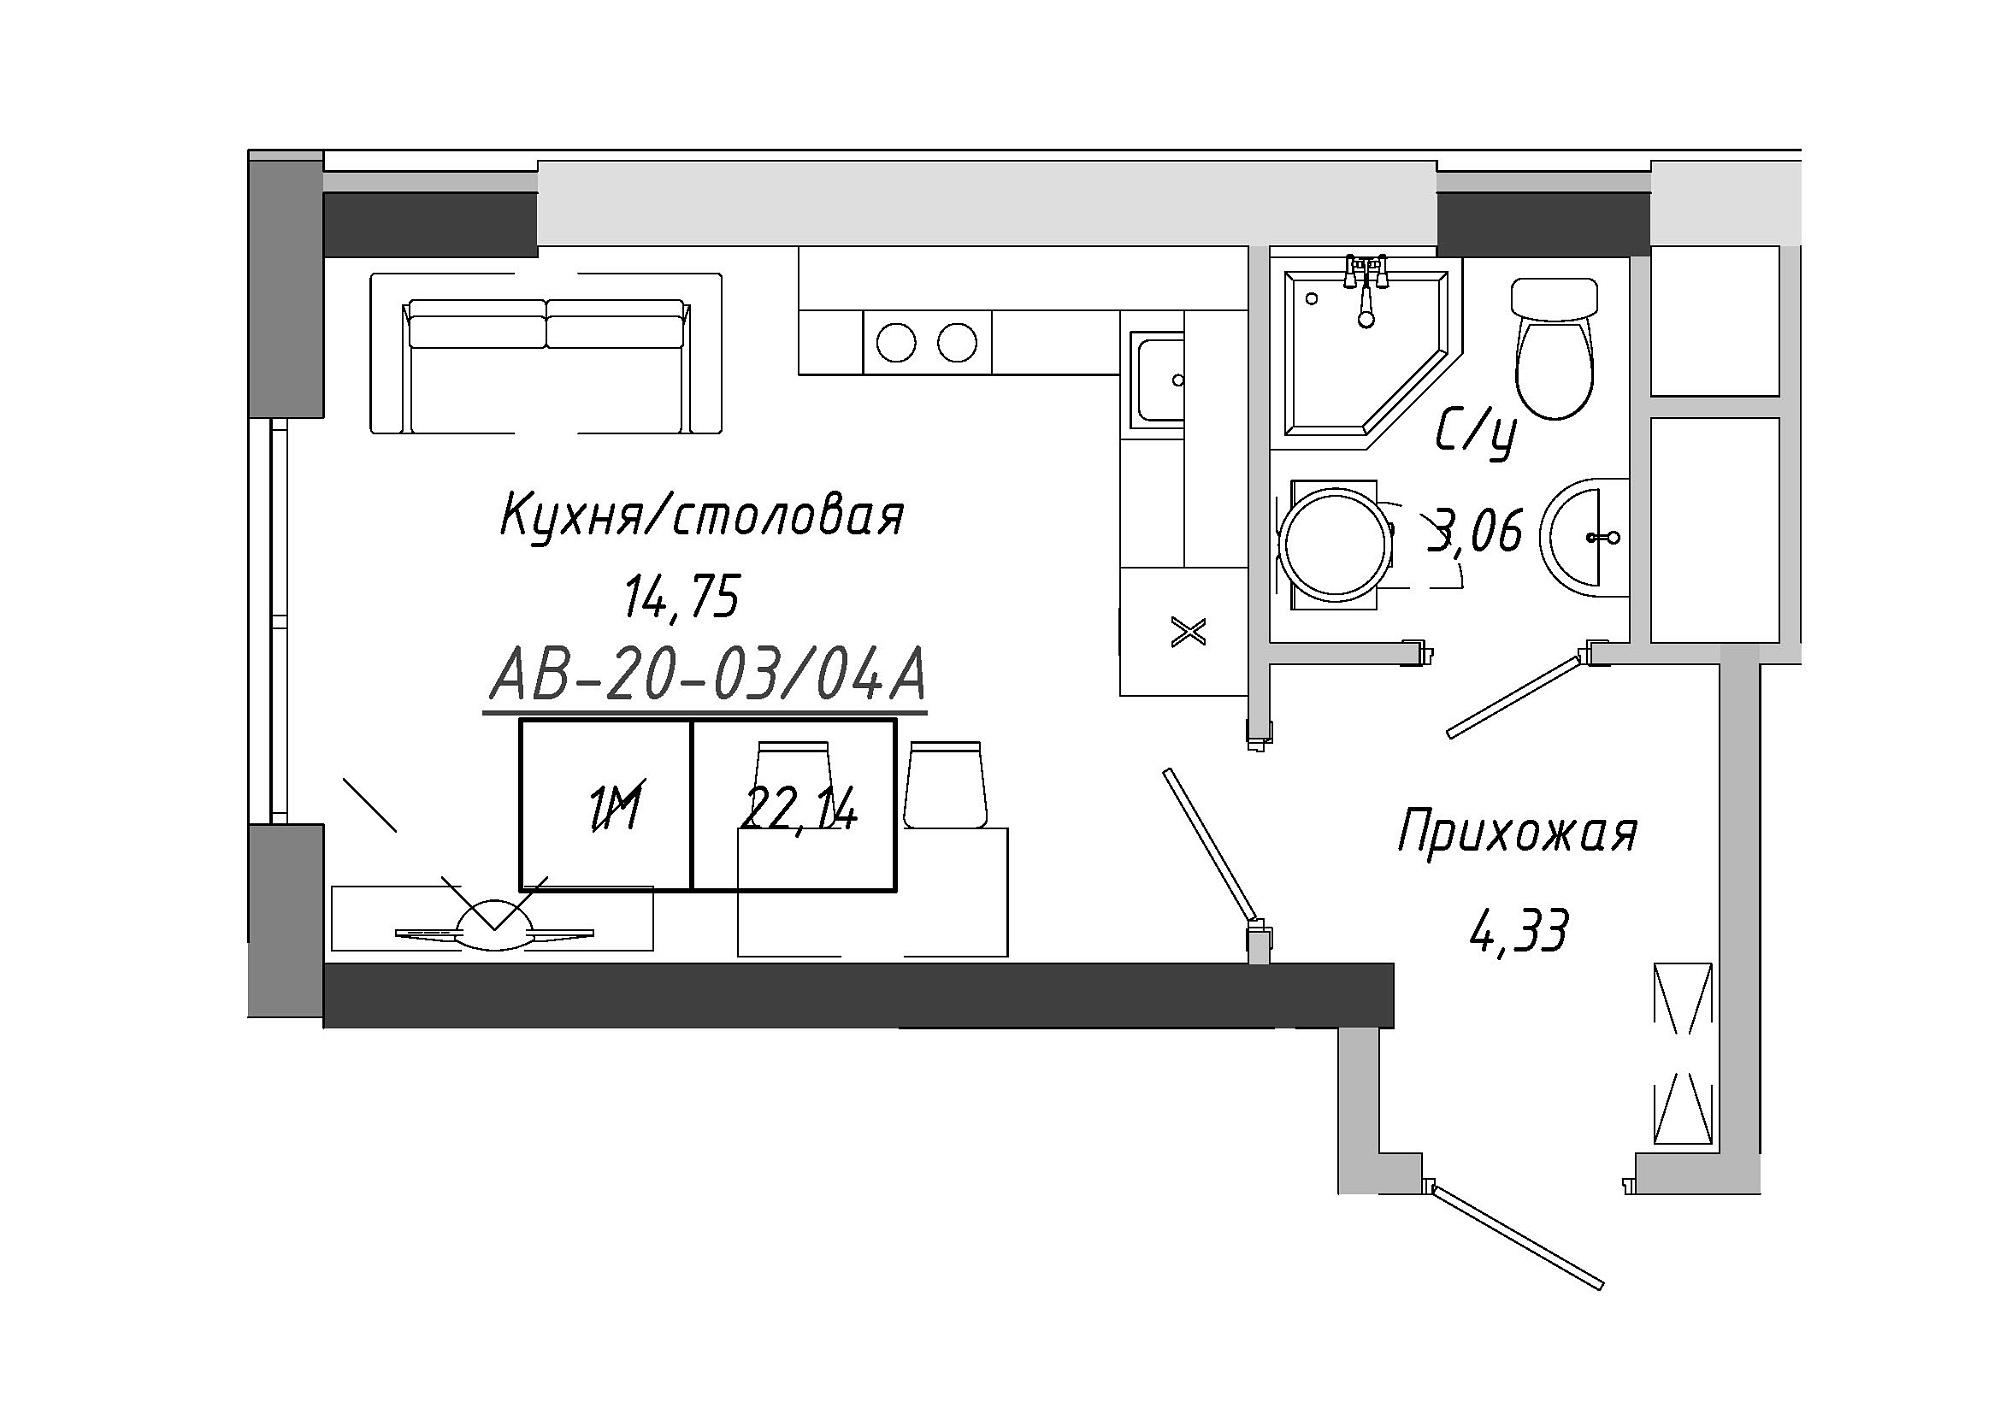 Планування Smart-квартира площею 22.14м2, AB-20-03/0004а.